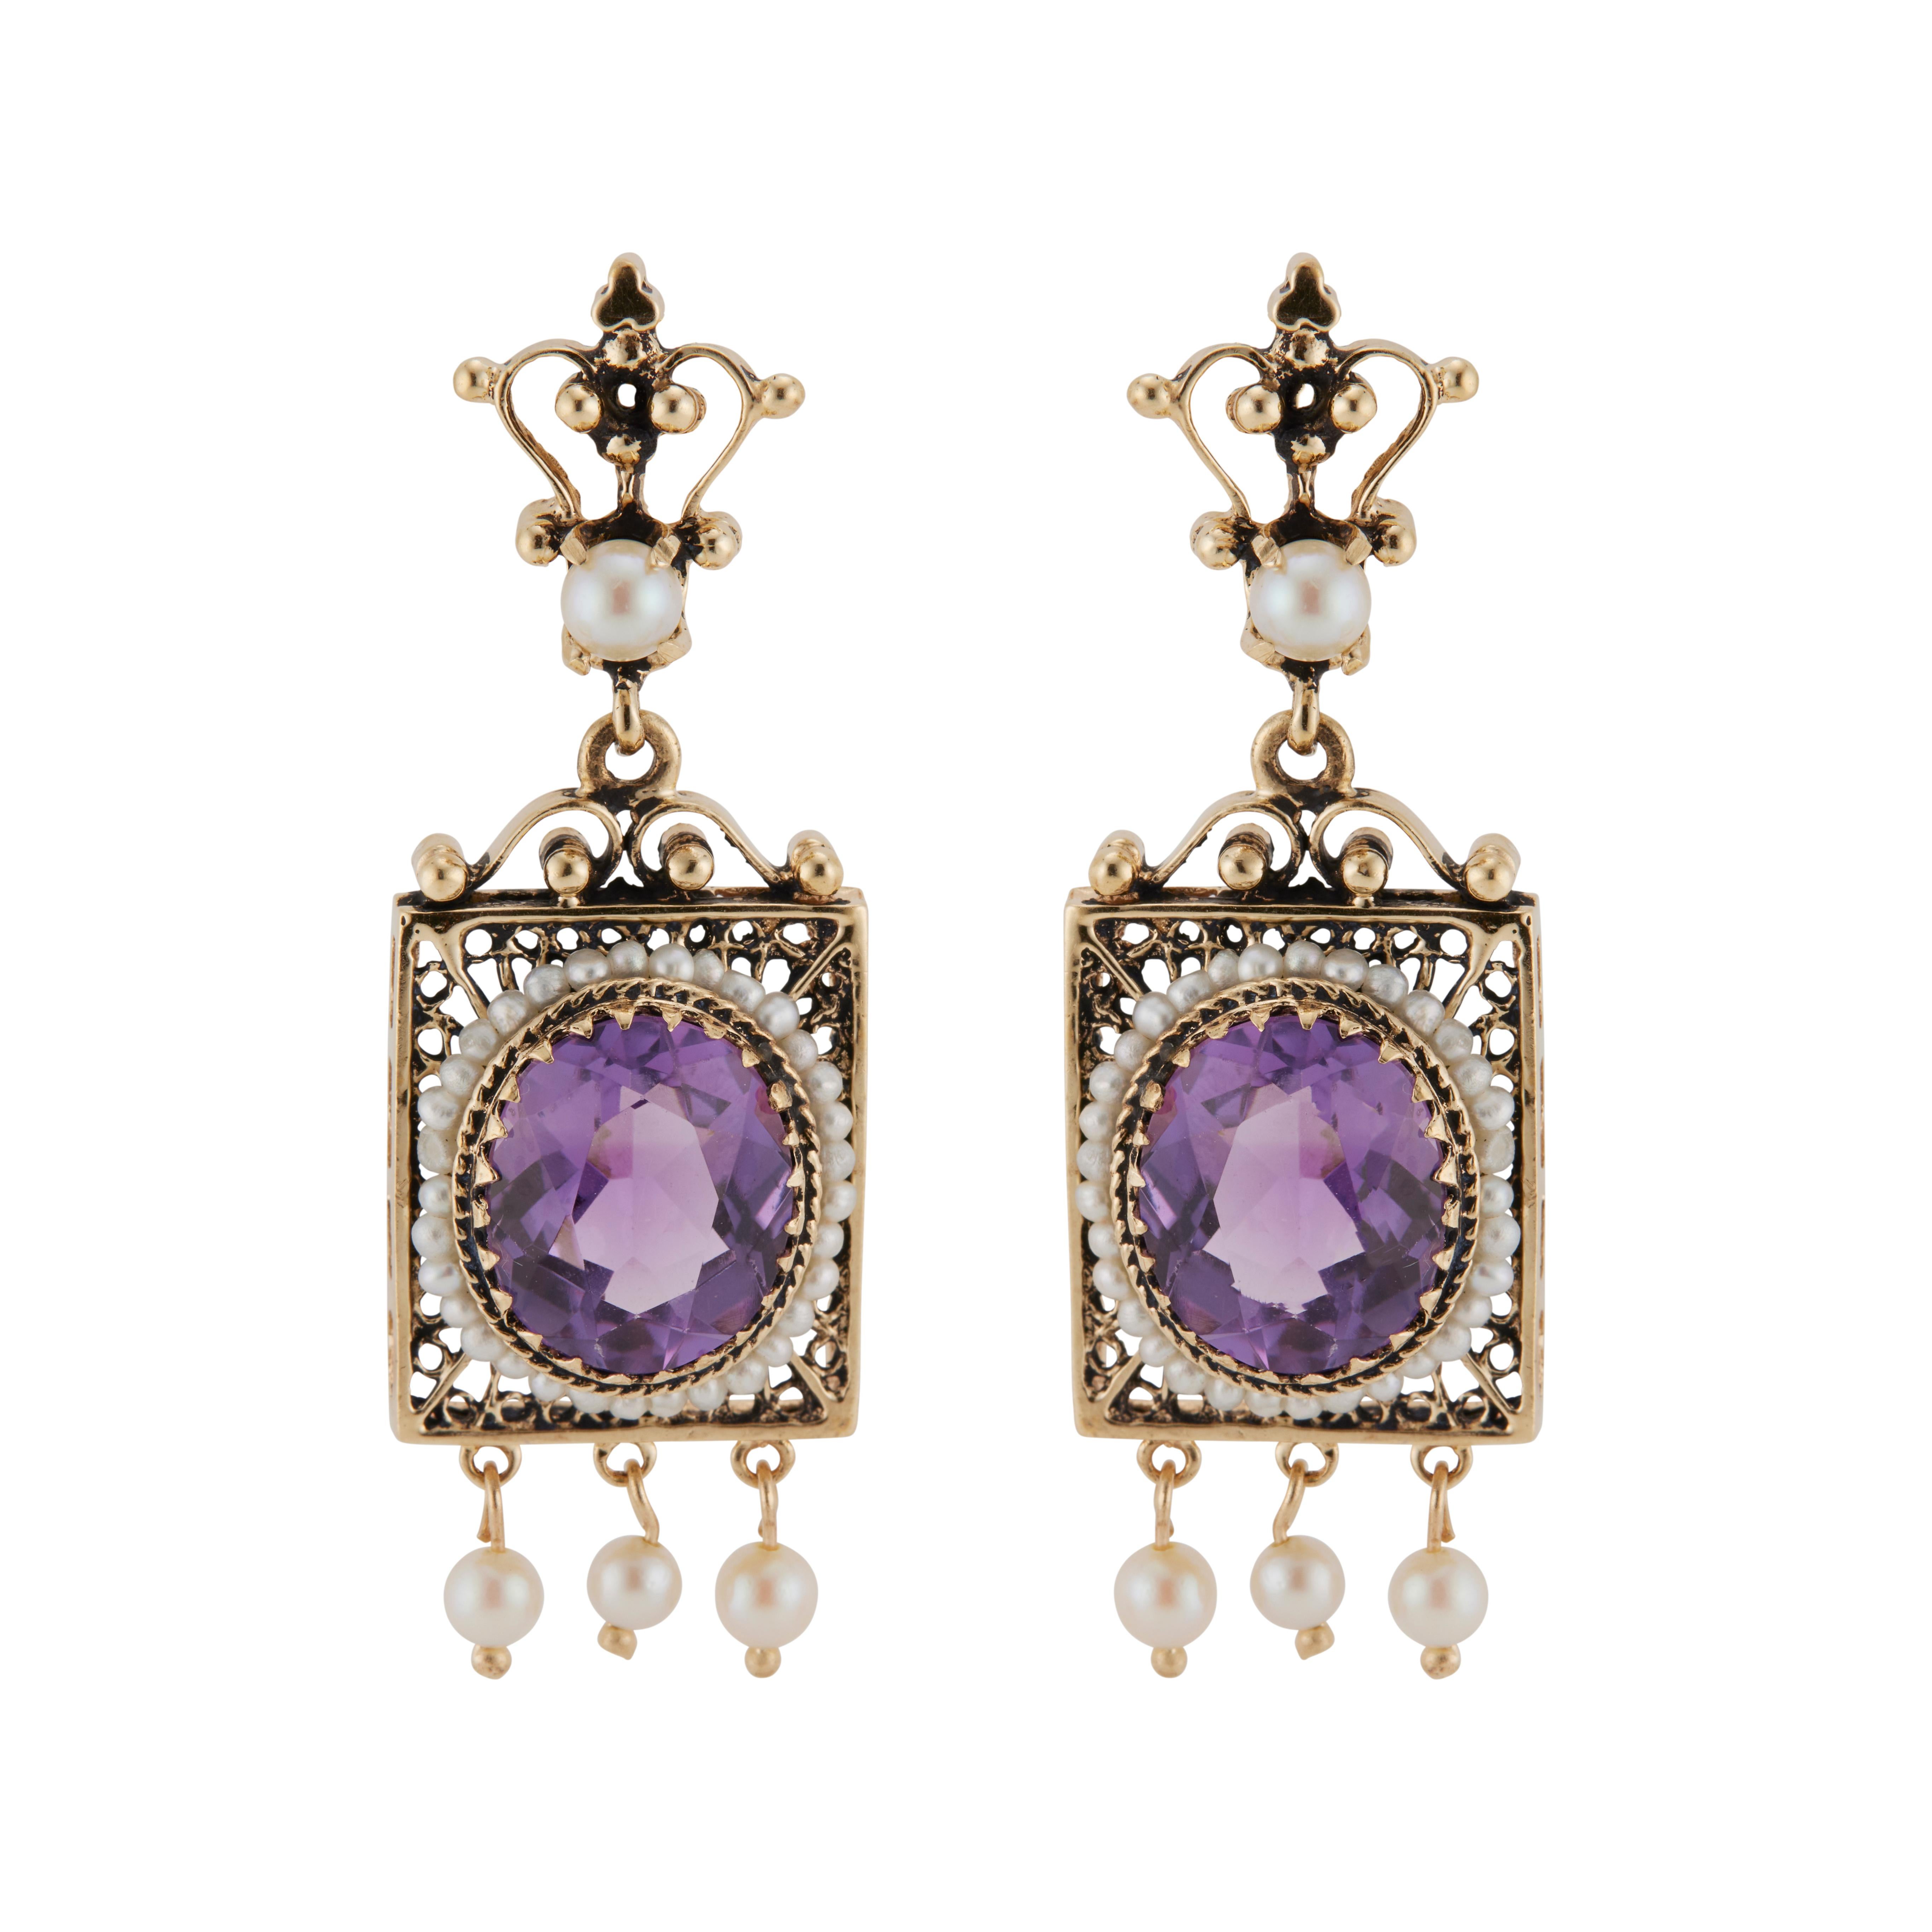 boucles d'oreilles pendantes en améthyste et perle de style victorien des années 1940. deux améthystes authentiques de forme ovale, chacune avec un halo de perles, sont montées dans des boucles d'oreilles pendantes en or jaune 14k, accentuées par